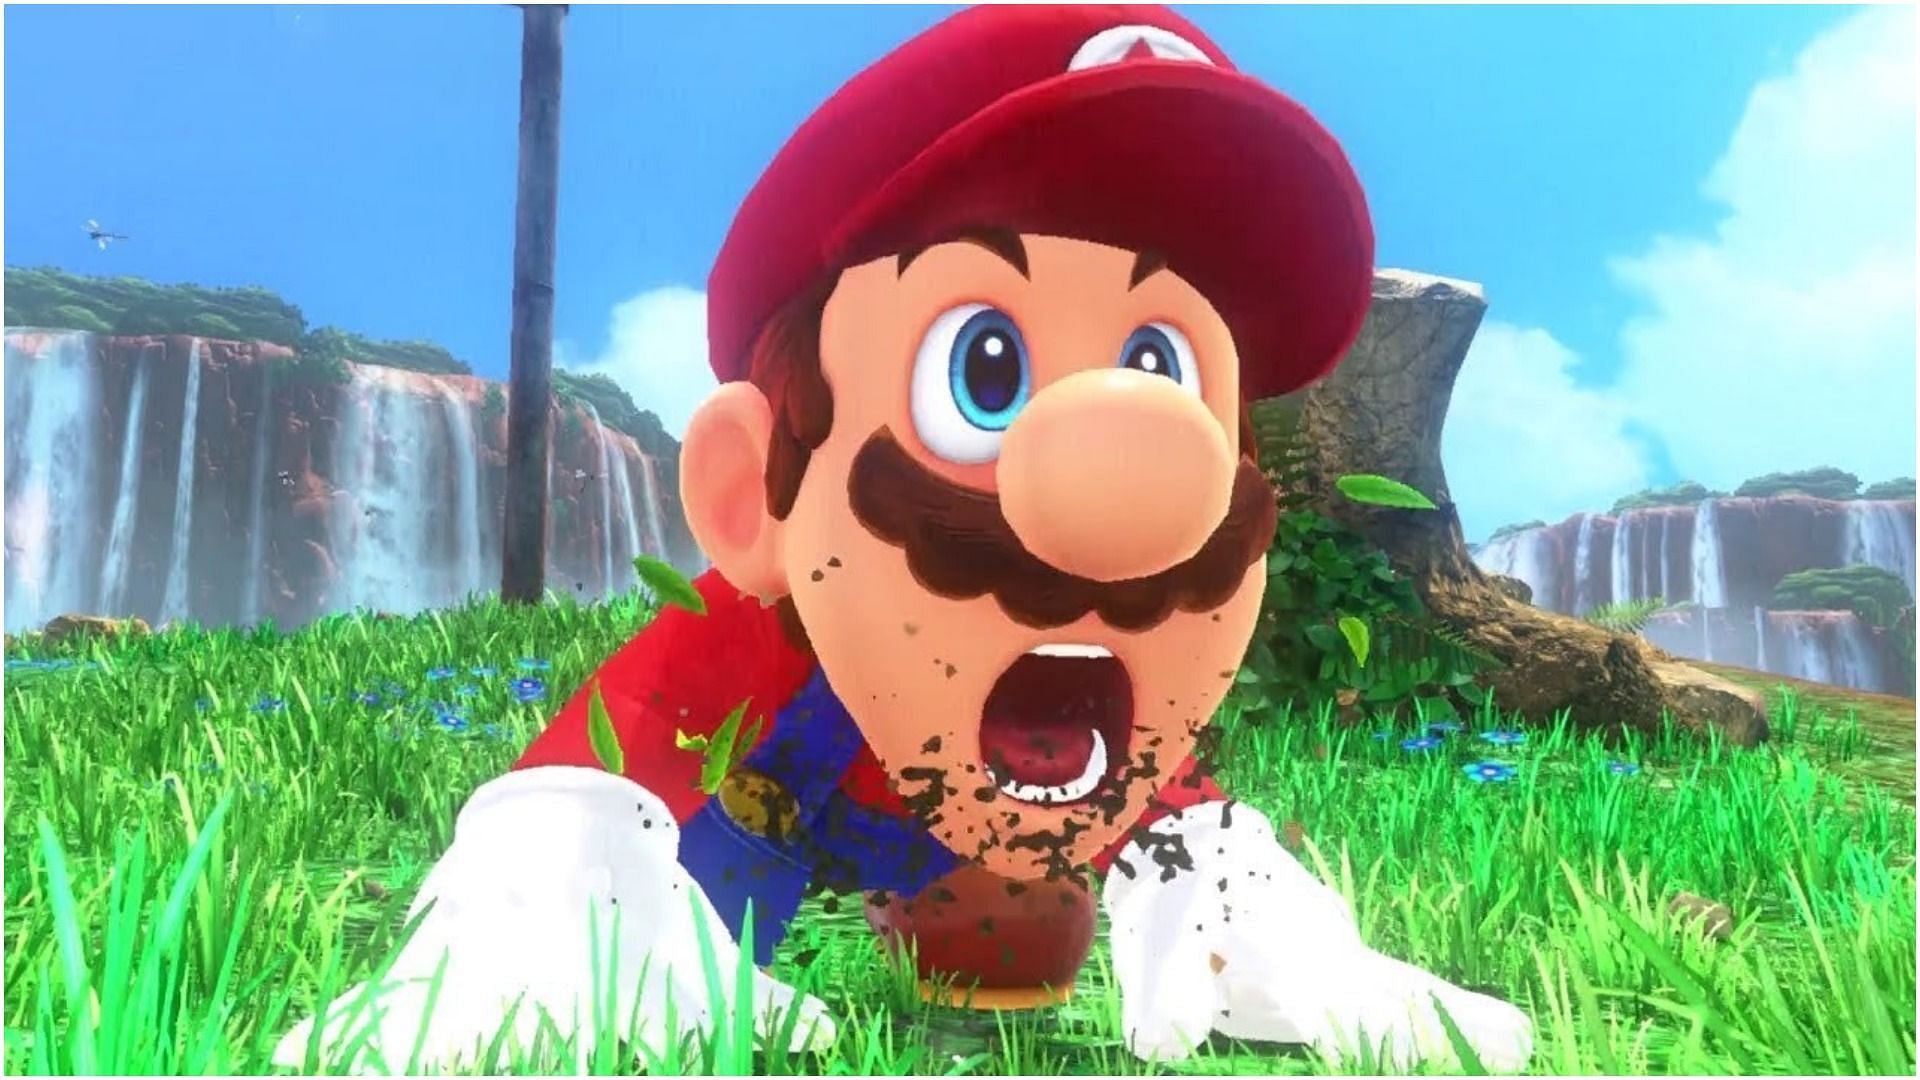 Mario as seen in Super Mario Odyssey (Image via Nintendo)